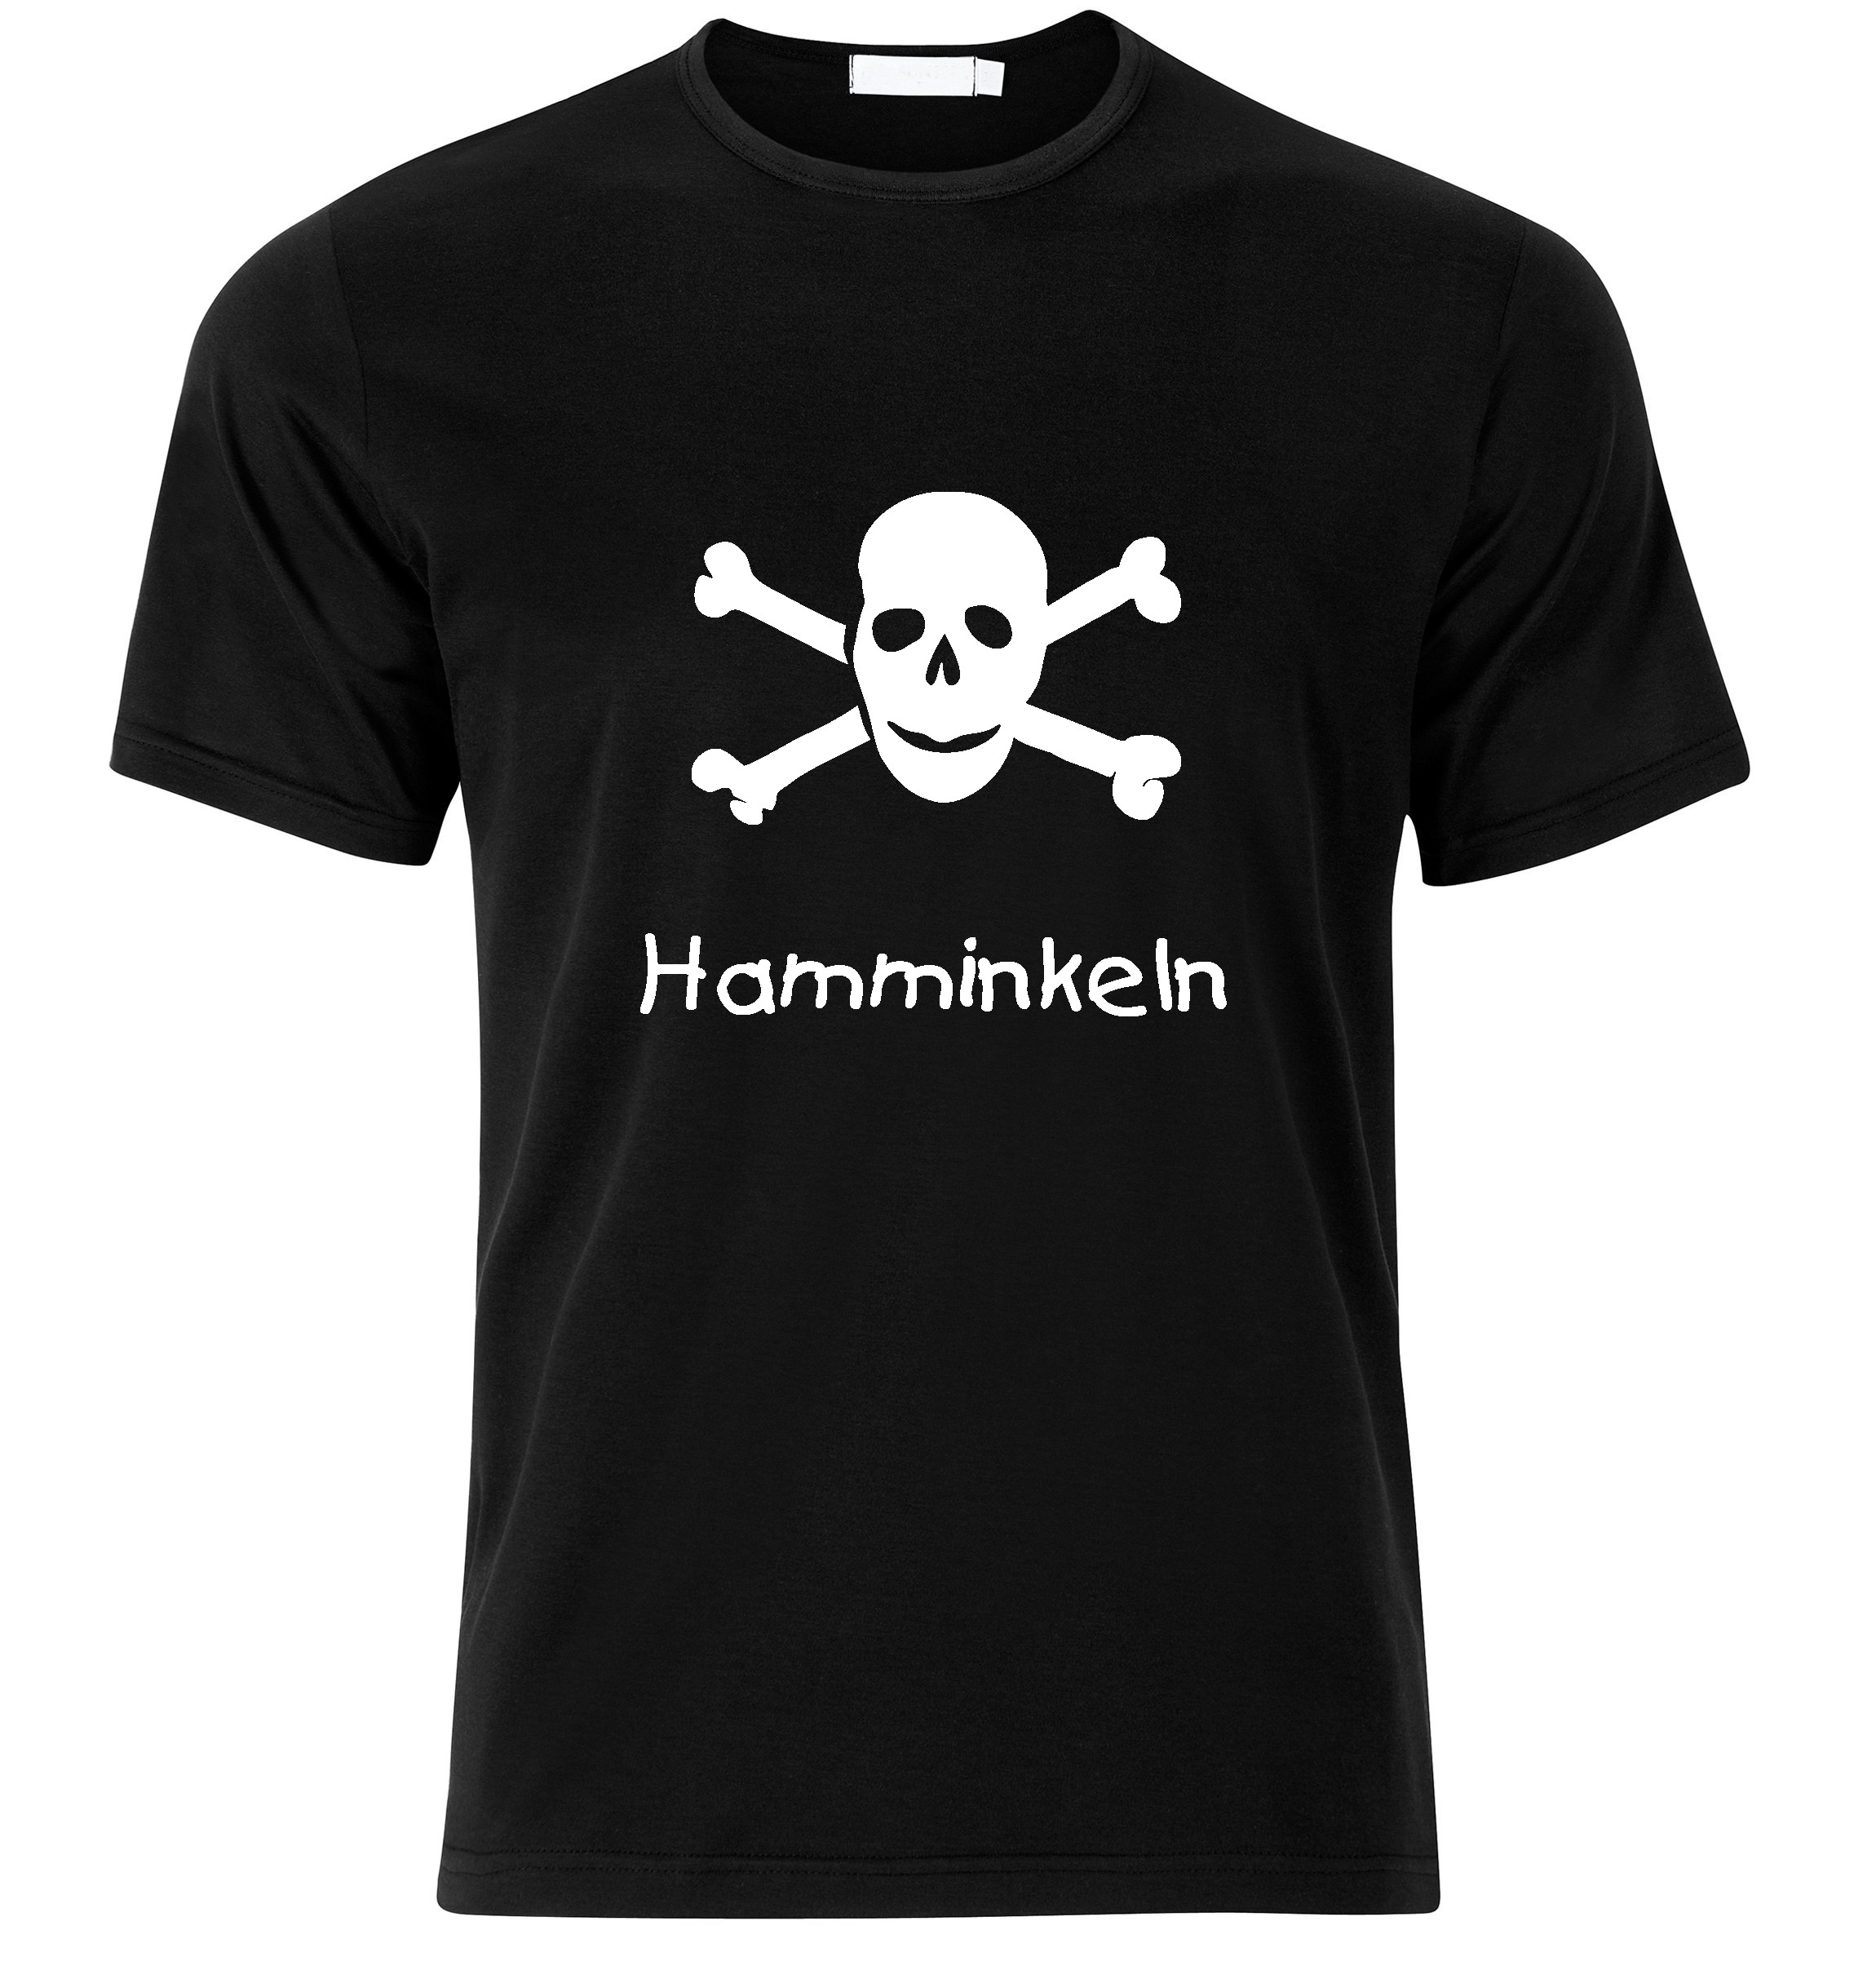 T-Shirt Hamminkeln Jolly Roger, Totenkopf